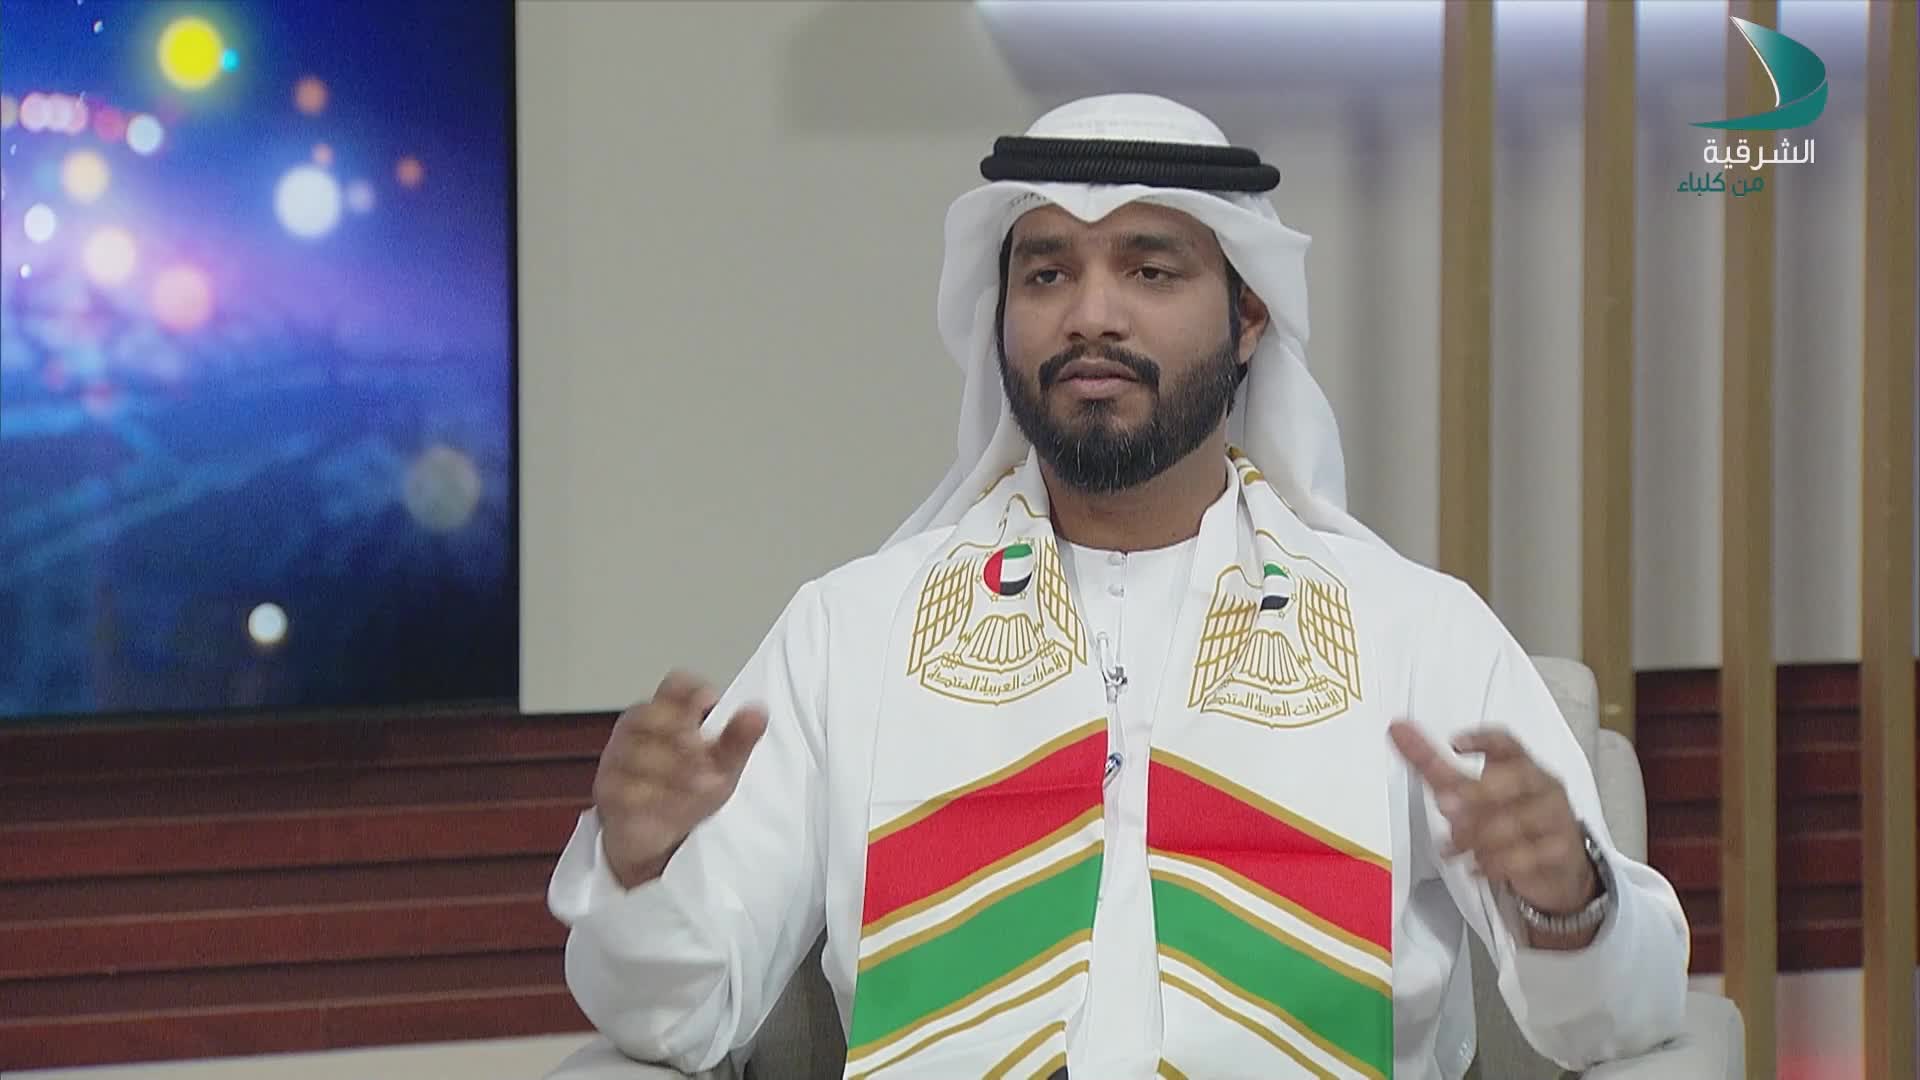 حديث المساء - جاسم محمد النقبي - متخصص في إدارة المشاريع